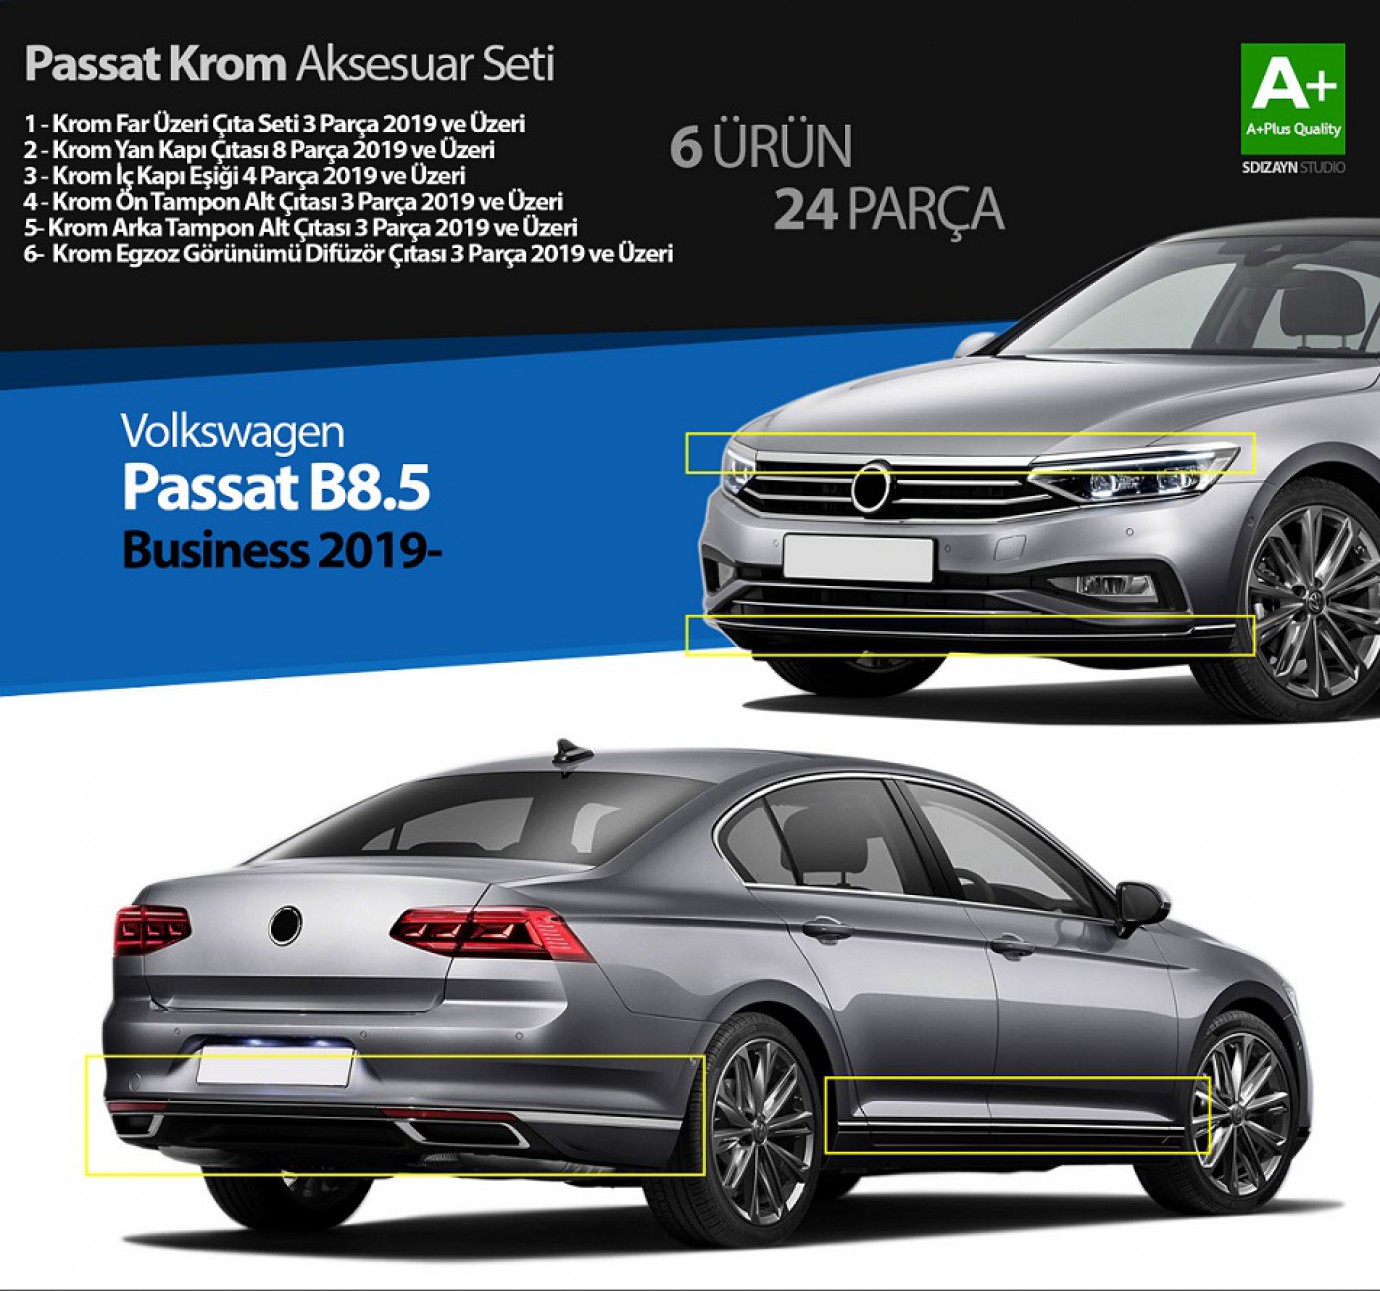 VW Passat B8.5 Business Krom Aksesuar Seti 24 Parça A+Kalite